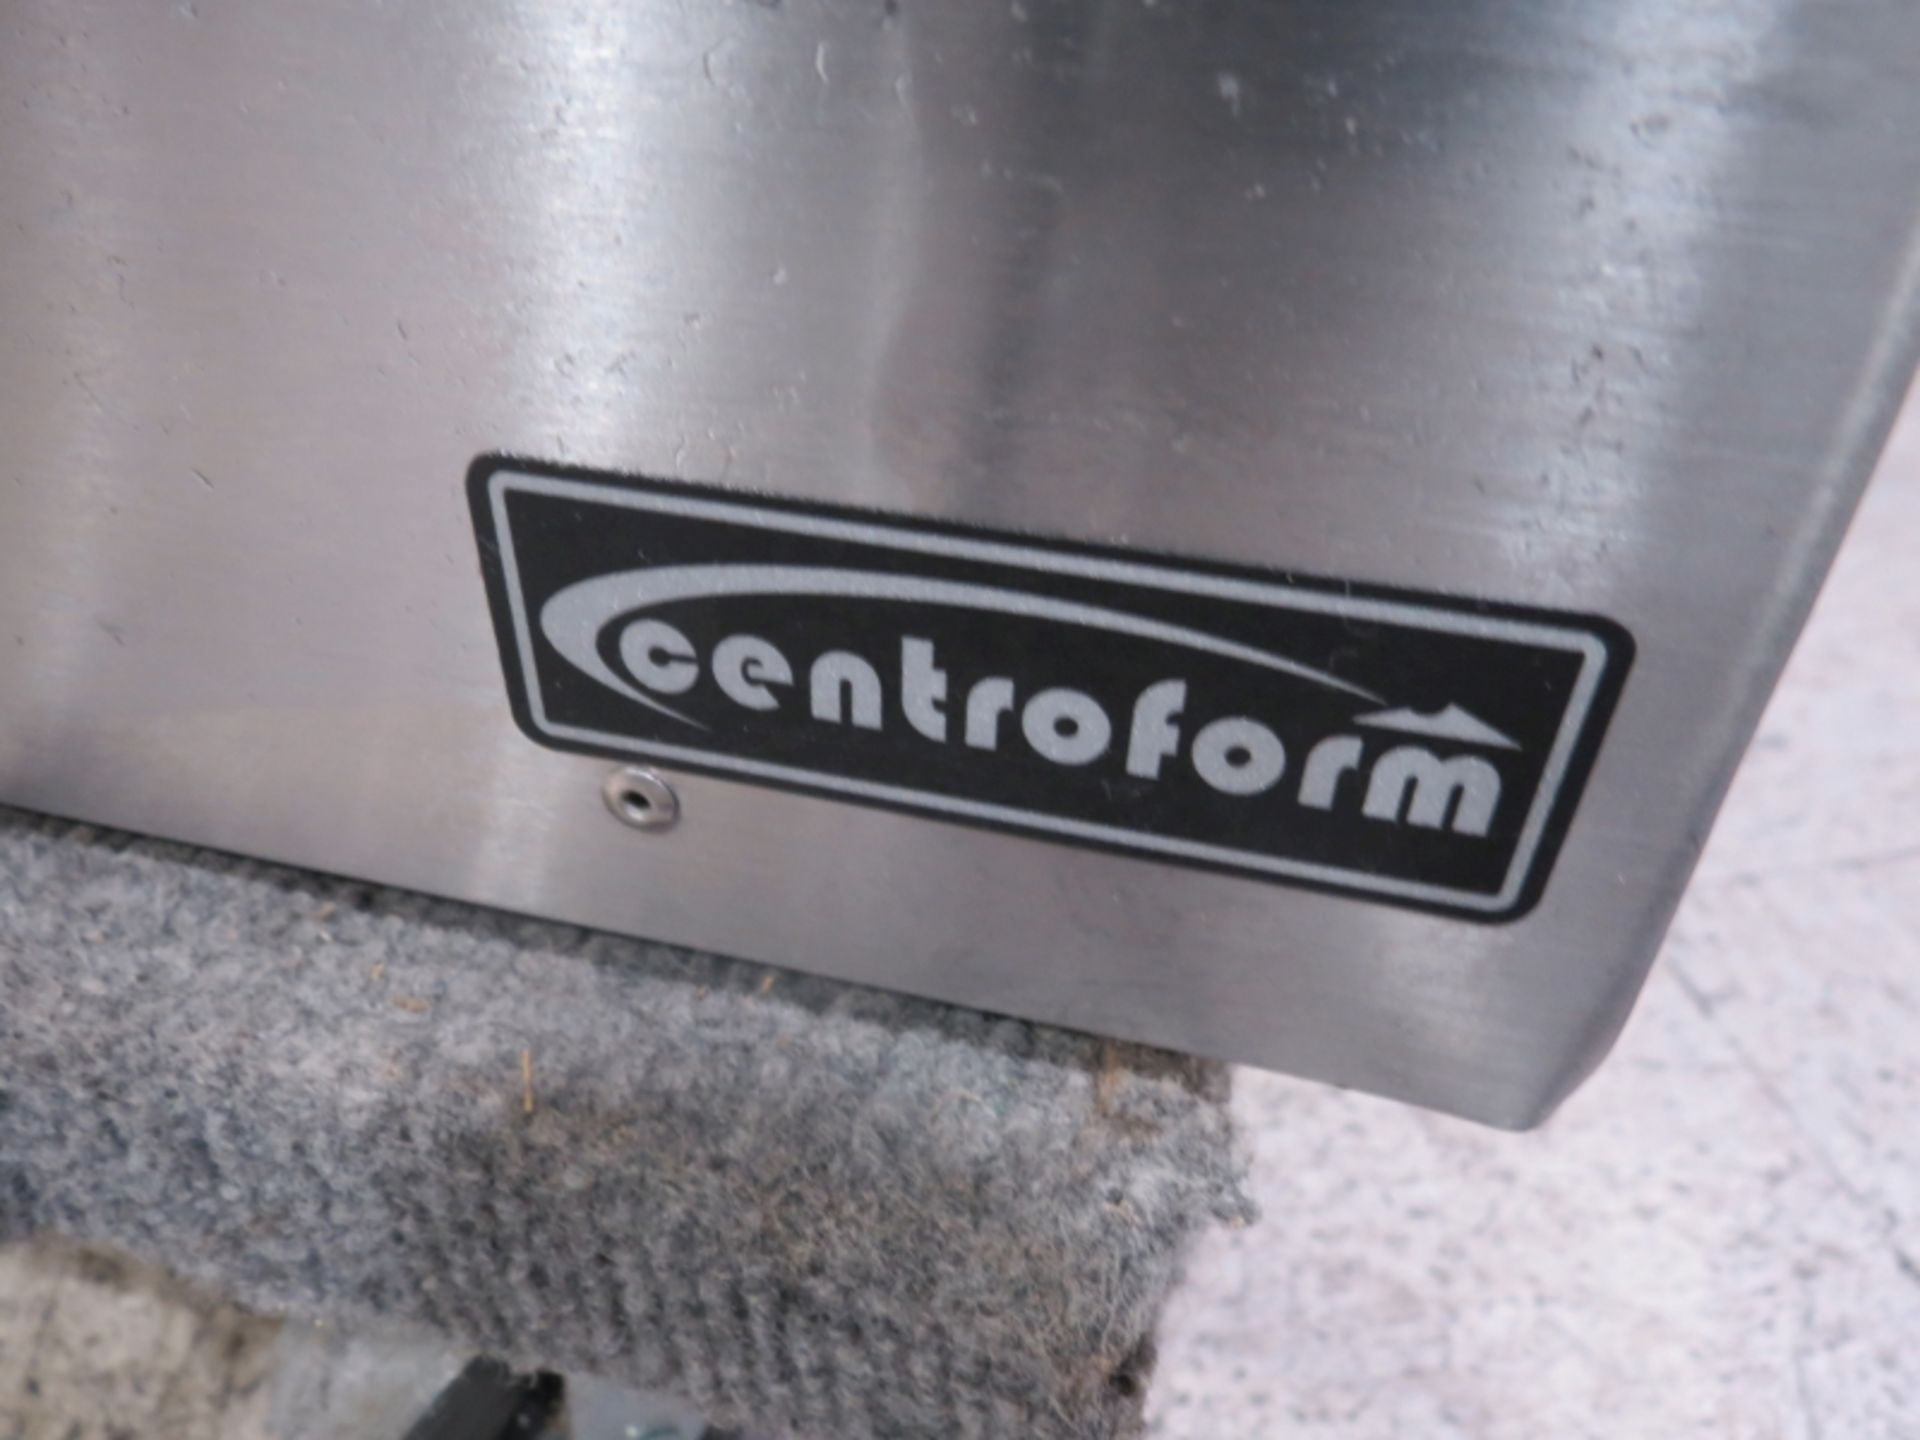 Centroform Hot Vacuum Press - Image 4 of 4